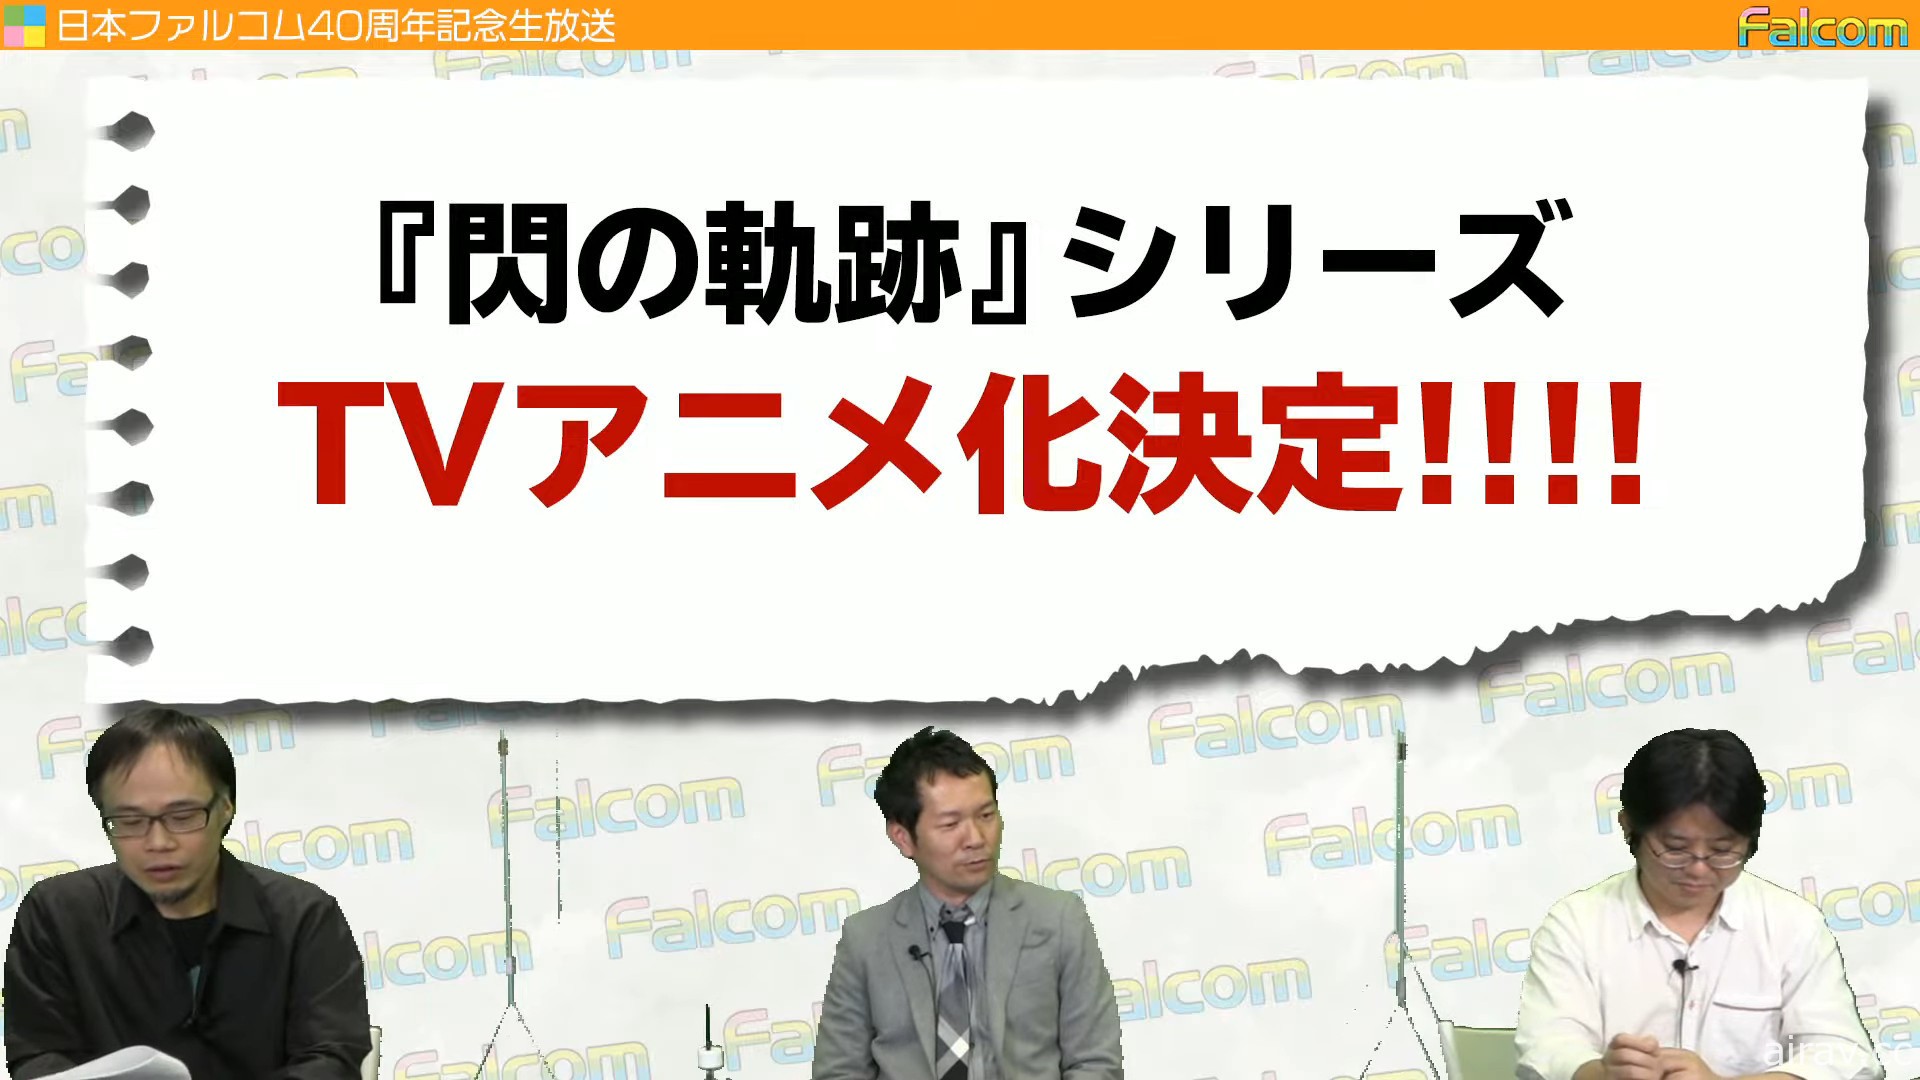 Nihon Falcom x 雲豹娛樂社長對談 分享《軌跡》系列藍圖與未來展望